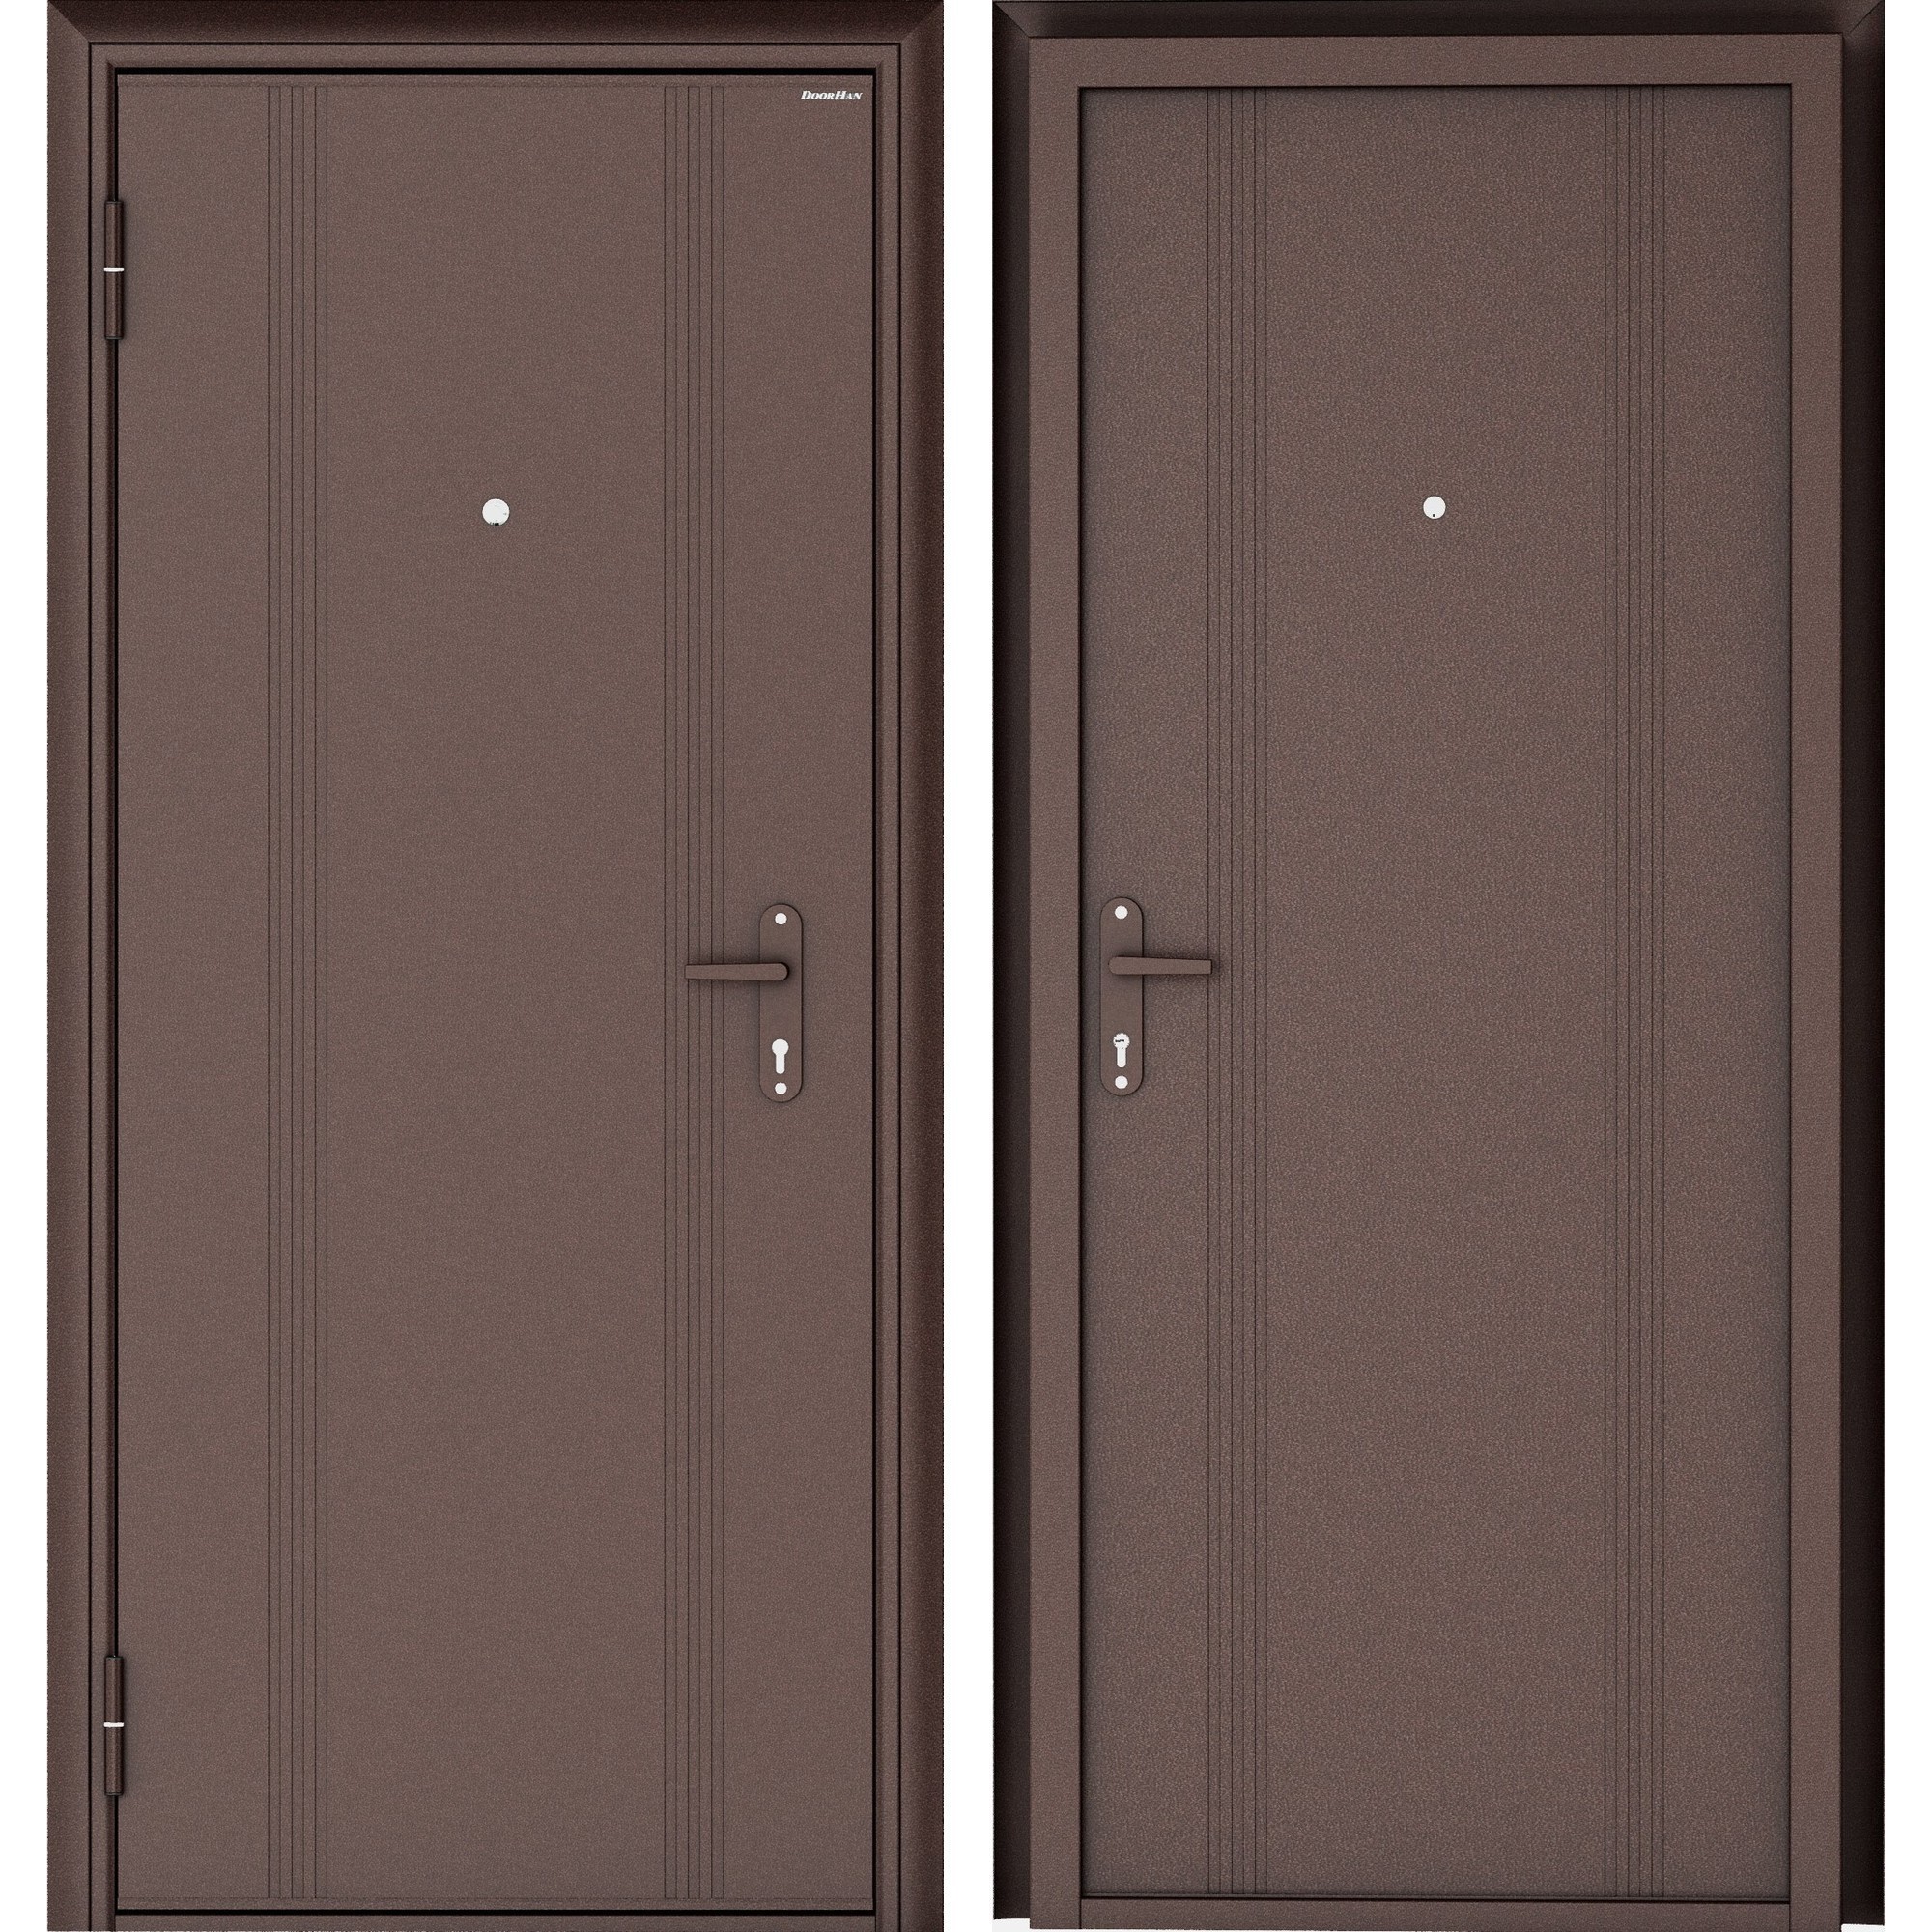 16802294 Дверь входная металлическая Эко, 880 мм, левая, цвет антик медь STLM-0007190 DOORHAN